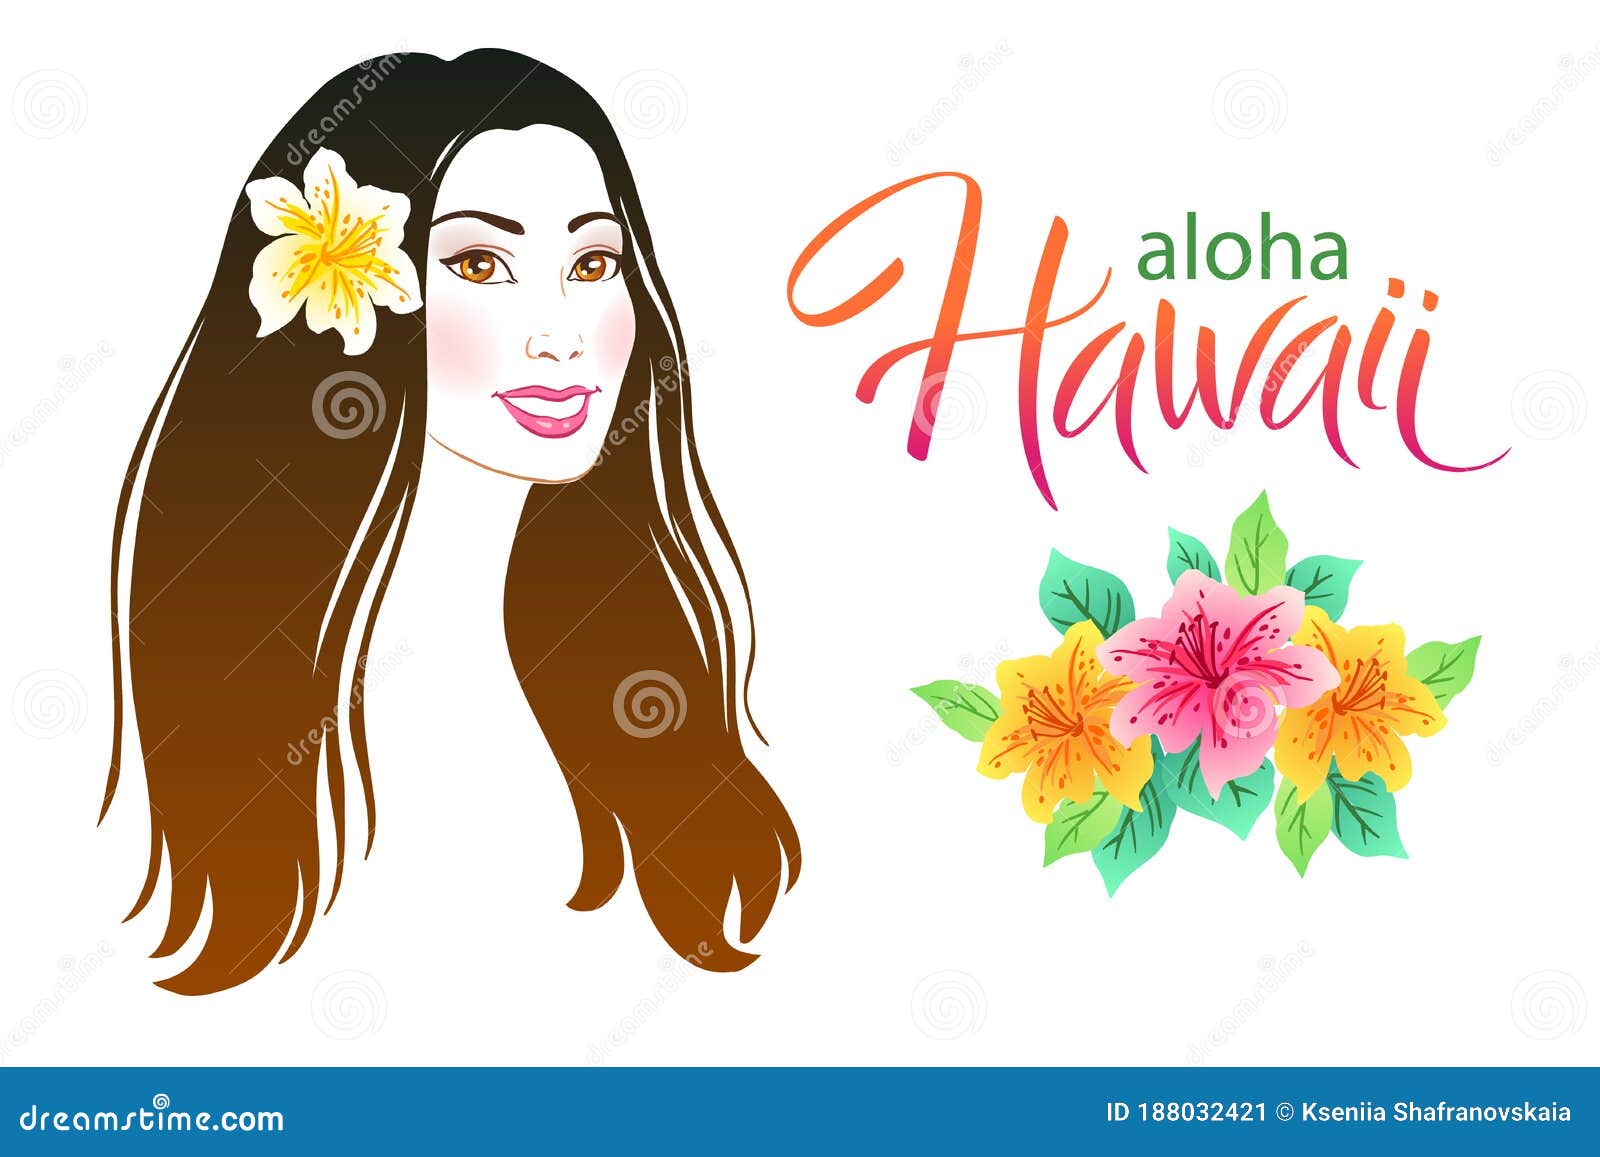 Hawaiian twist-back hairstyle! | Hawaiian flower hair, Hawaiian hairstyles,  Luau hair